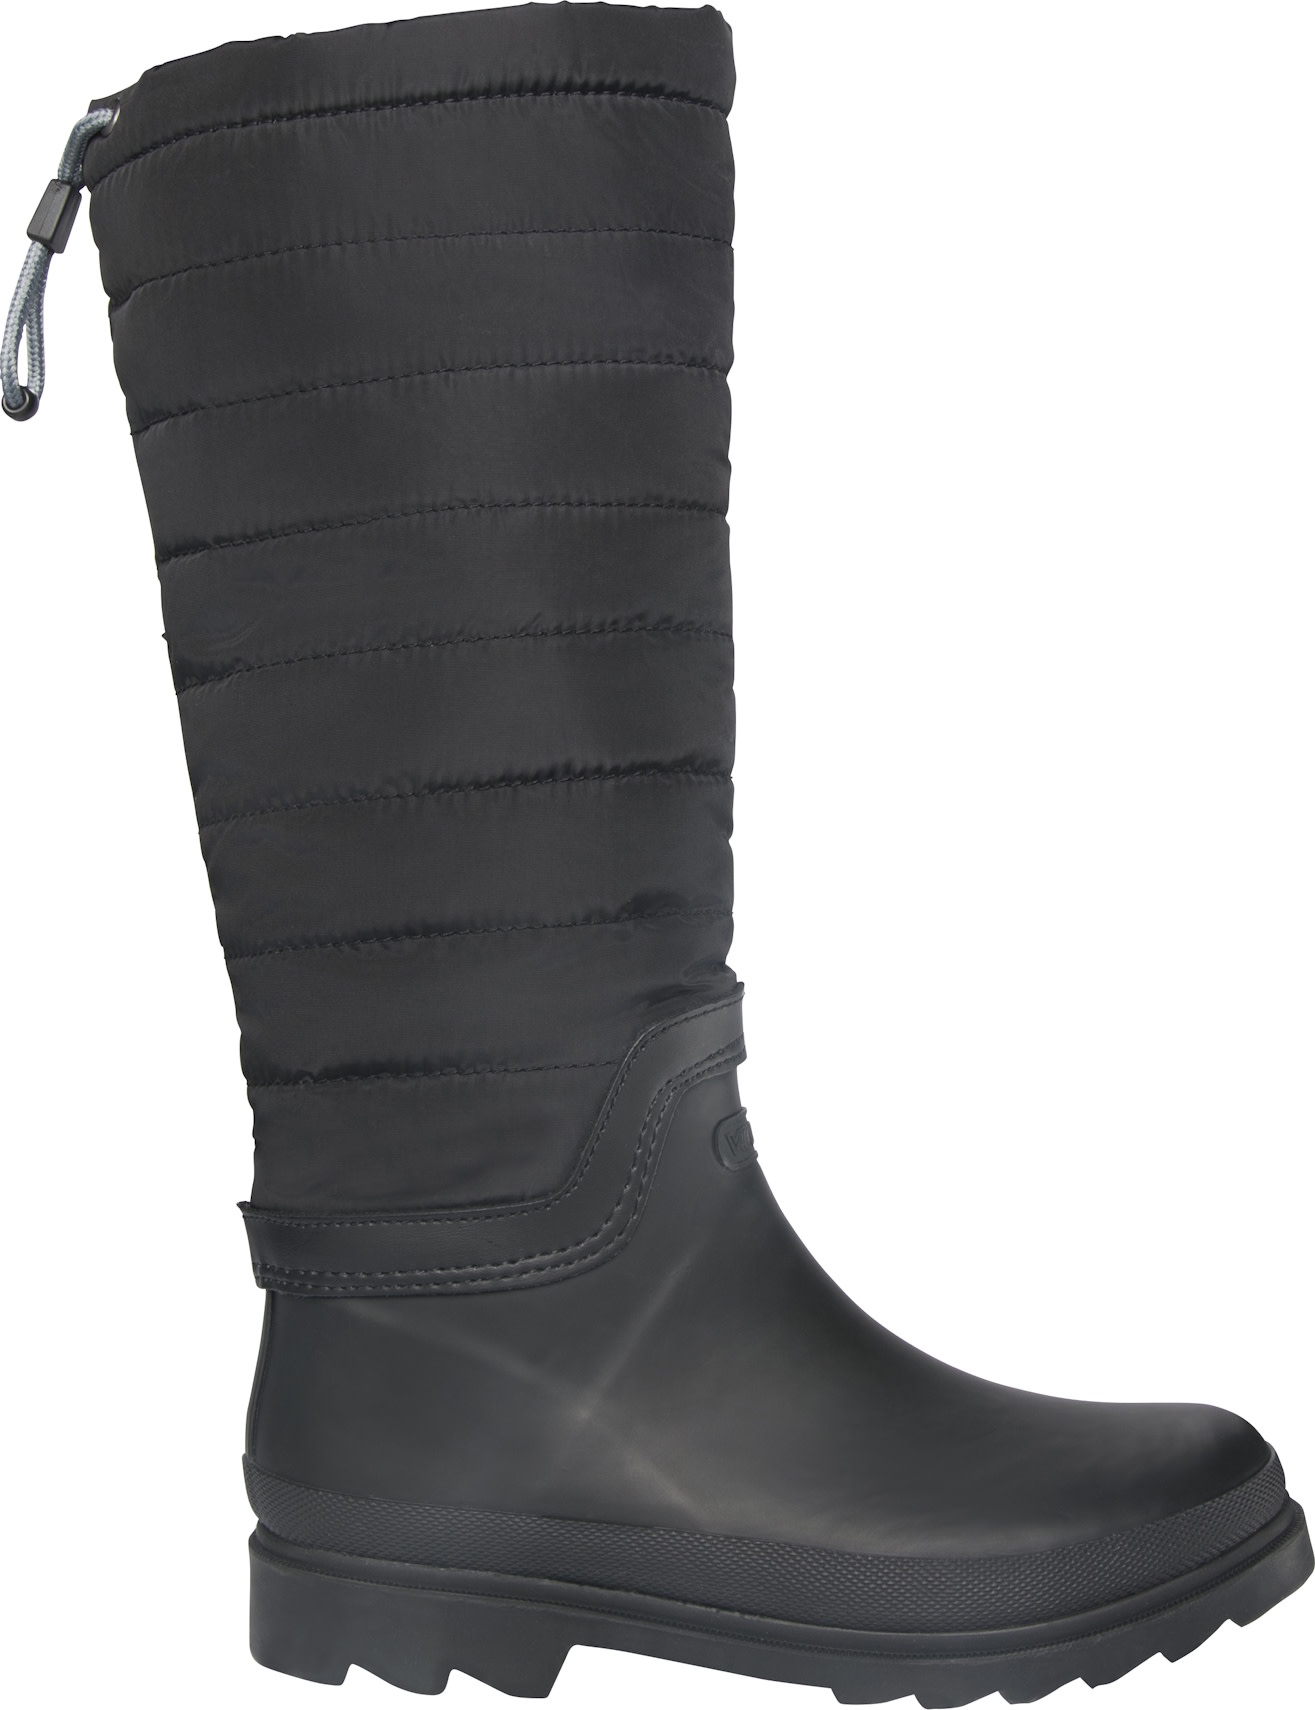 Viking Footwear Women’s Puffer Warm Black